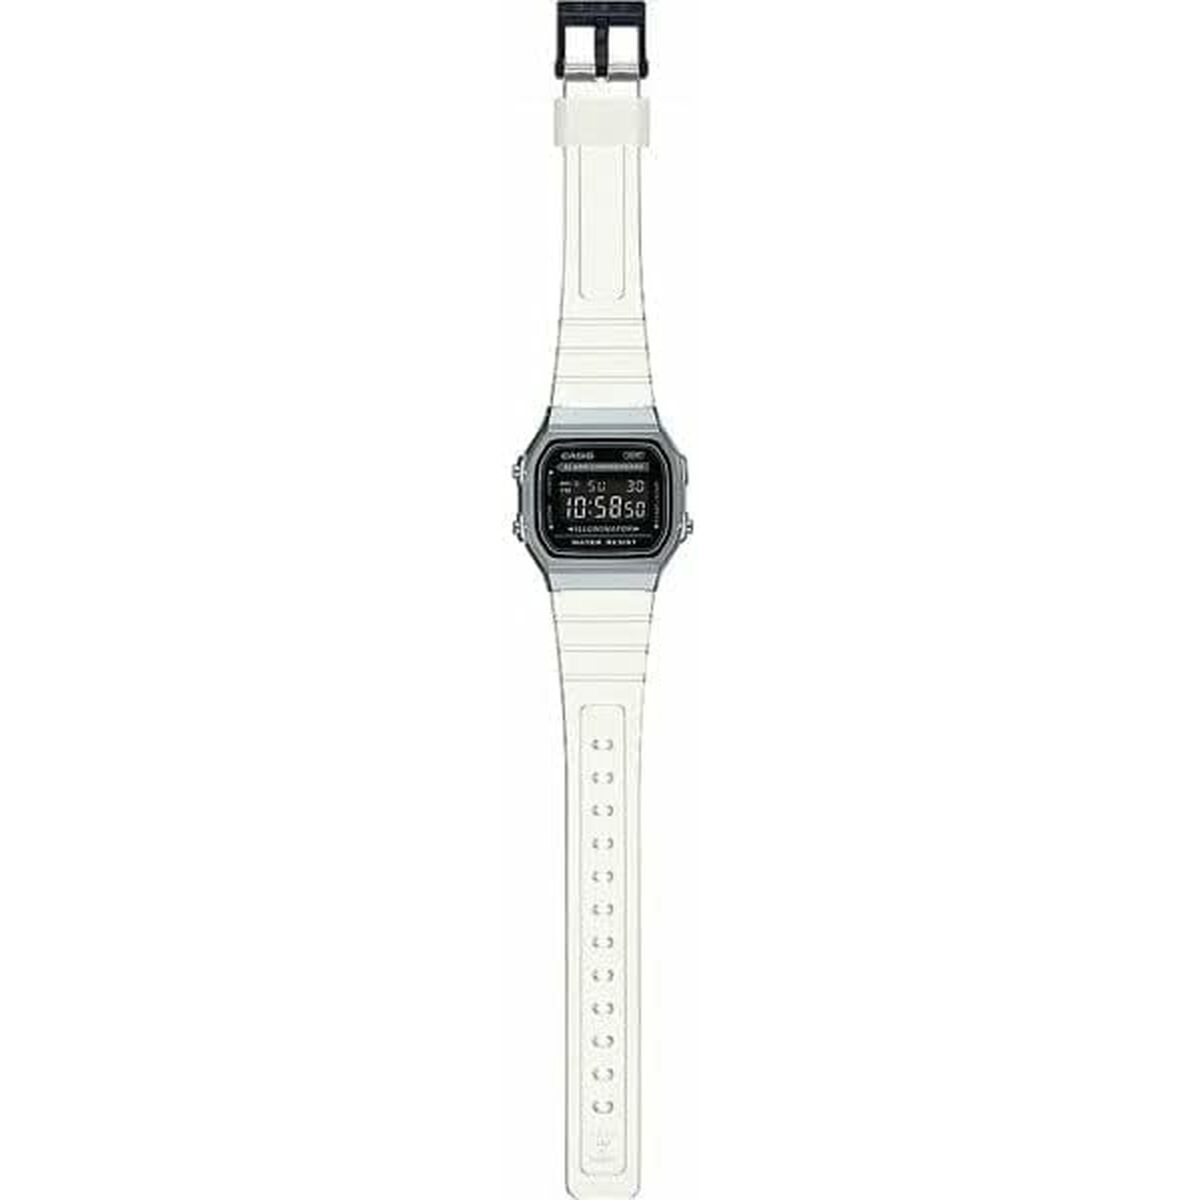 Kaufe Unisex-Uhr Casio VINTAGE COLLECTION - TRANSPARENT BAND - BLACK Schwarz Silberfarben (Ø 36 mm) bei AWK Flagship um € 72.00